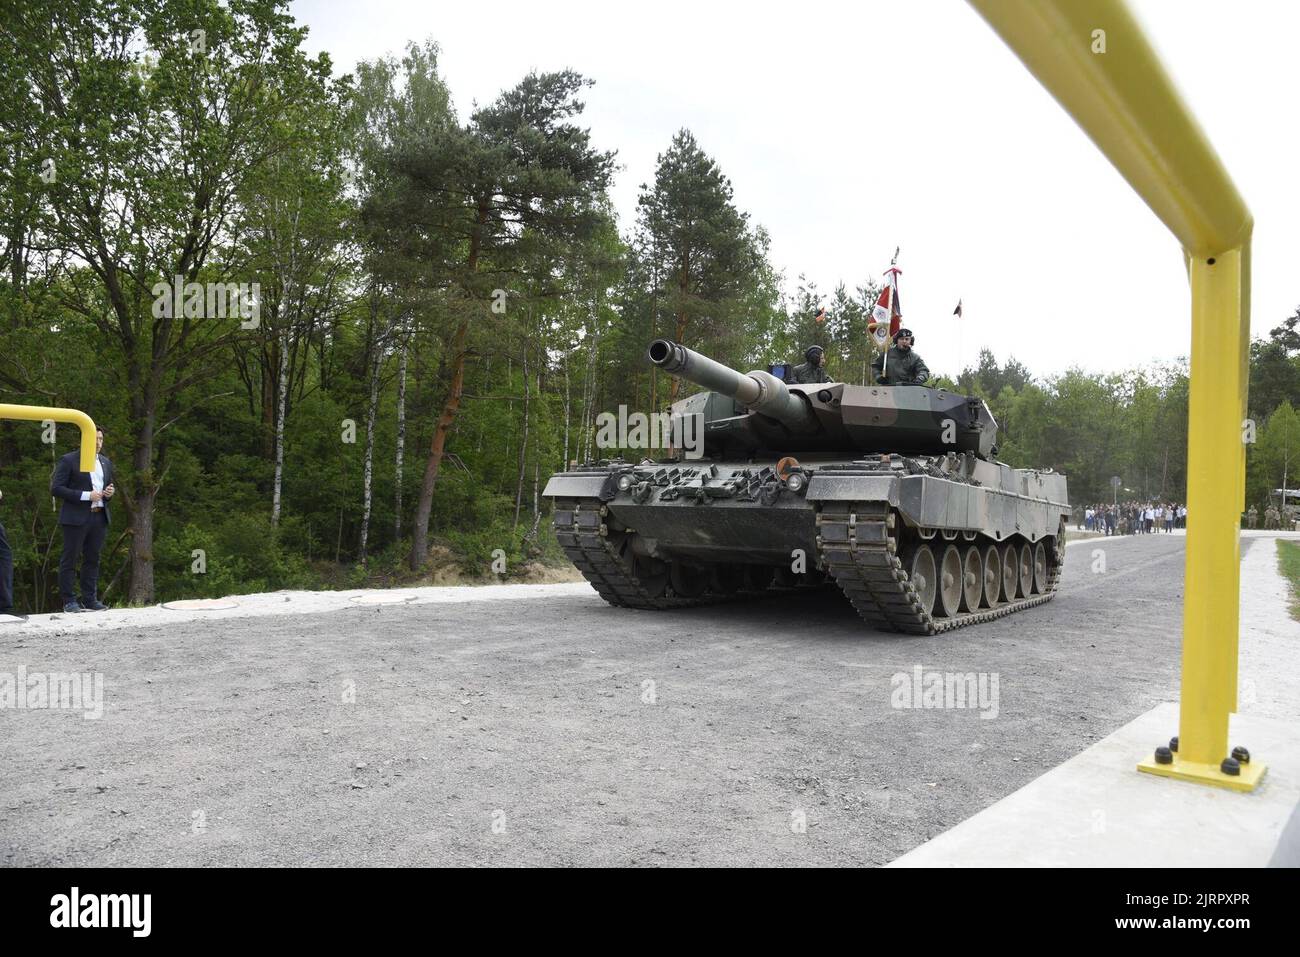 Ein Panzer der polnischen Armee Leopard 2 überquert als erster die neu fertiggestellte Brücke über den Fluss Kwisa auf dem Trainingsgelände Żagan Świętoszów in Polen während einer Zeremonie am 24. Mai 2022. Das Brückenprojekt ist eine von vielen Verbesserungen des Schulungsbereichs, die das US Army Corps of Engineers in Polen in Zusammenarbeit mit der Polnischen Armee, dem 7. Army Training Command der US-Armee und anderen durchgeführt hat. Diese Projekte verbessern die Bereitschaft und Interoperabilität der USA, des Gastlandes und der alliierten Streitkräfte. (USA Armeefoto von Alfredo Barraza). Stockfoto